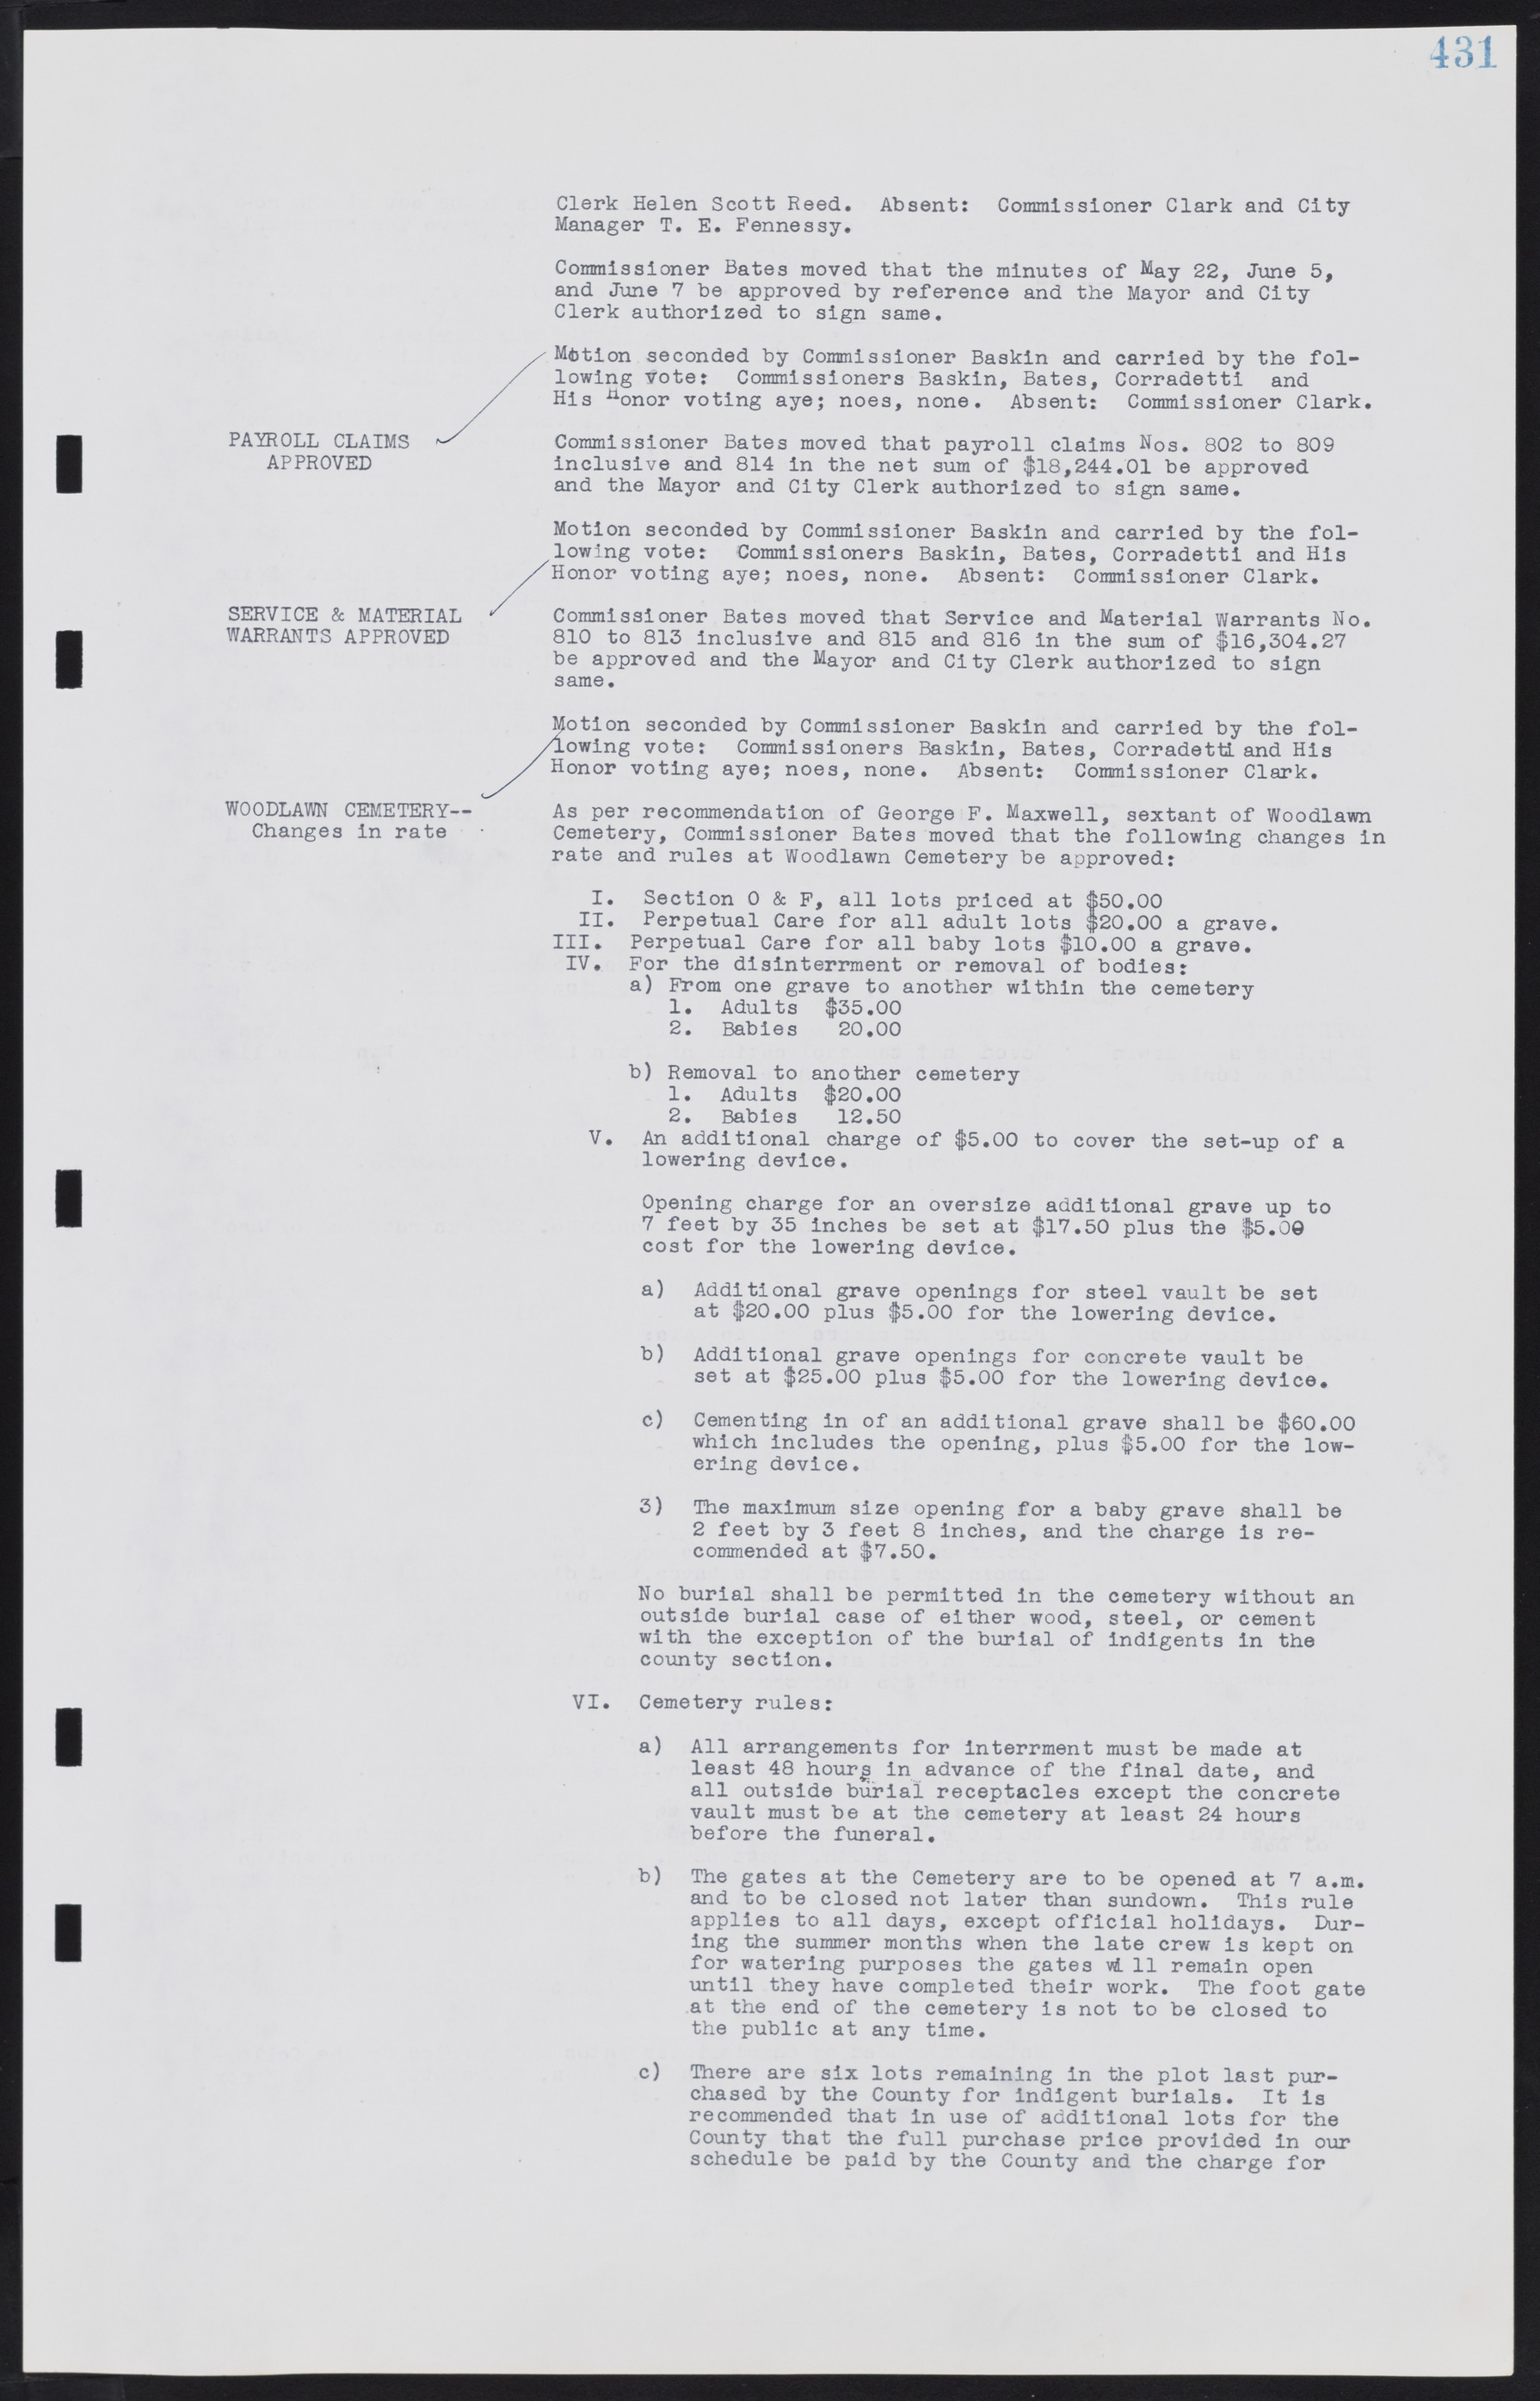 Las Vegas City Commission Minutes, August 11, 1942 to December 30, 1946, lvc000005-459